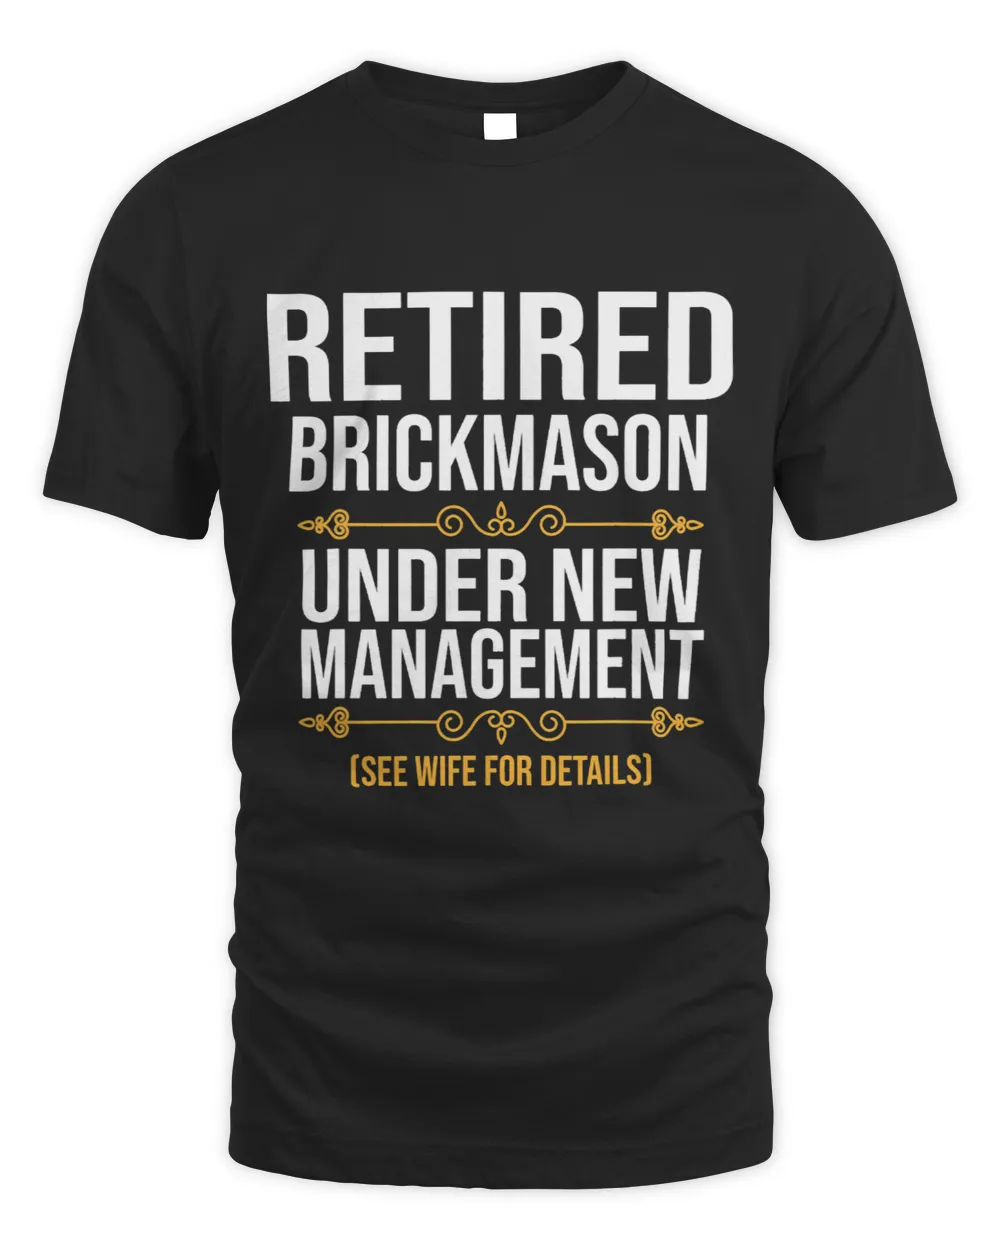 RETIRED BRICKMASON UNDER NEW MANAGEMENT